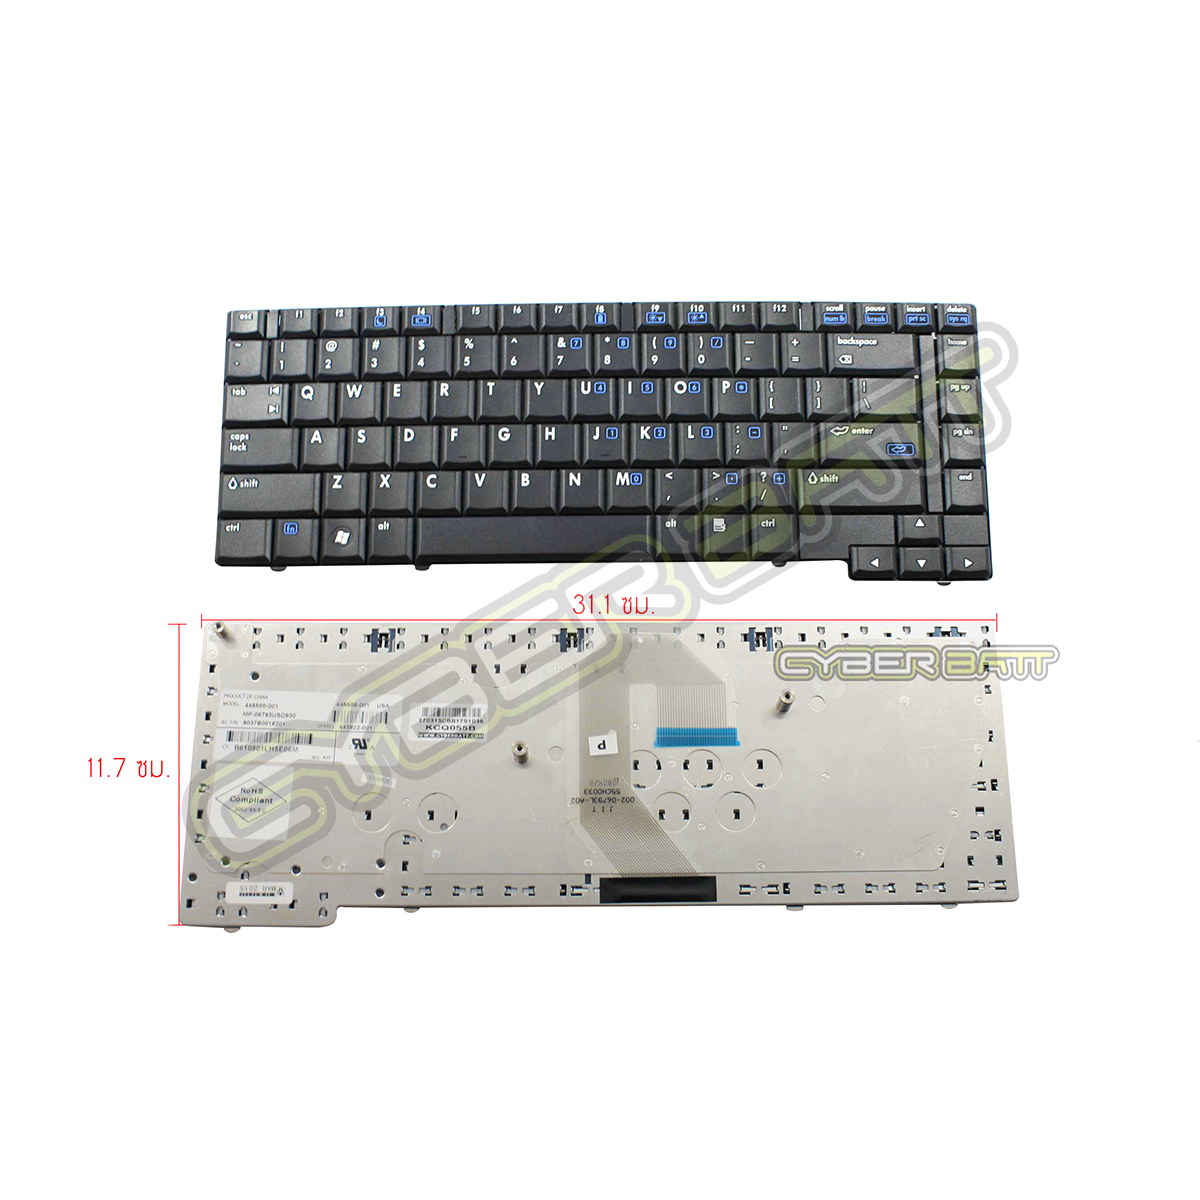 Keyboard HP/Compaq 6510 Series Black US 